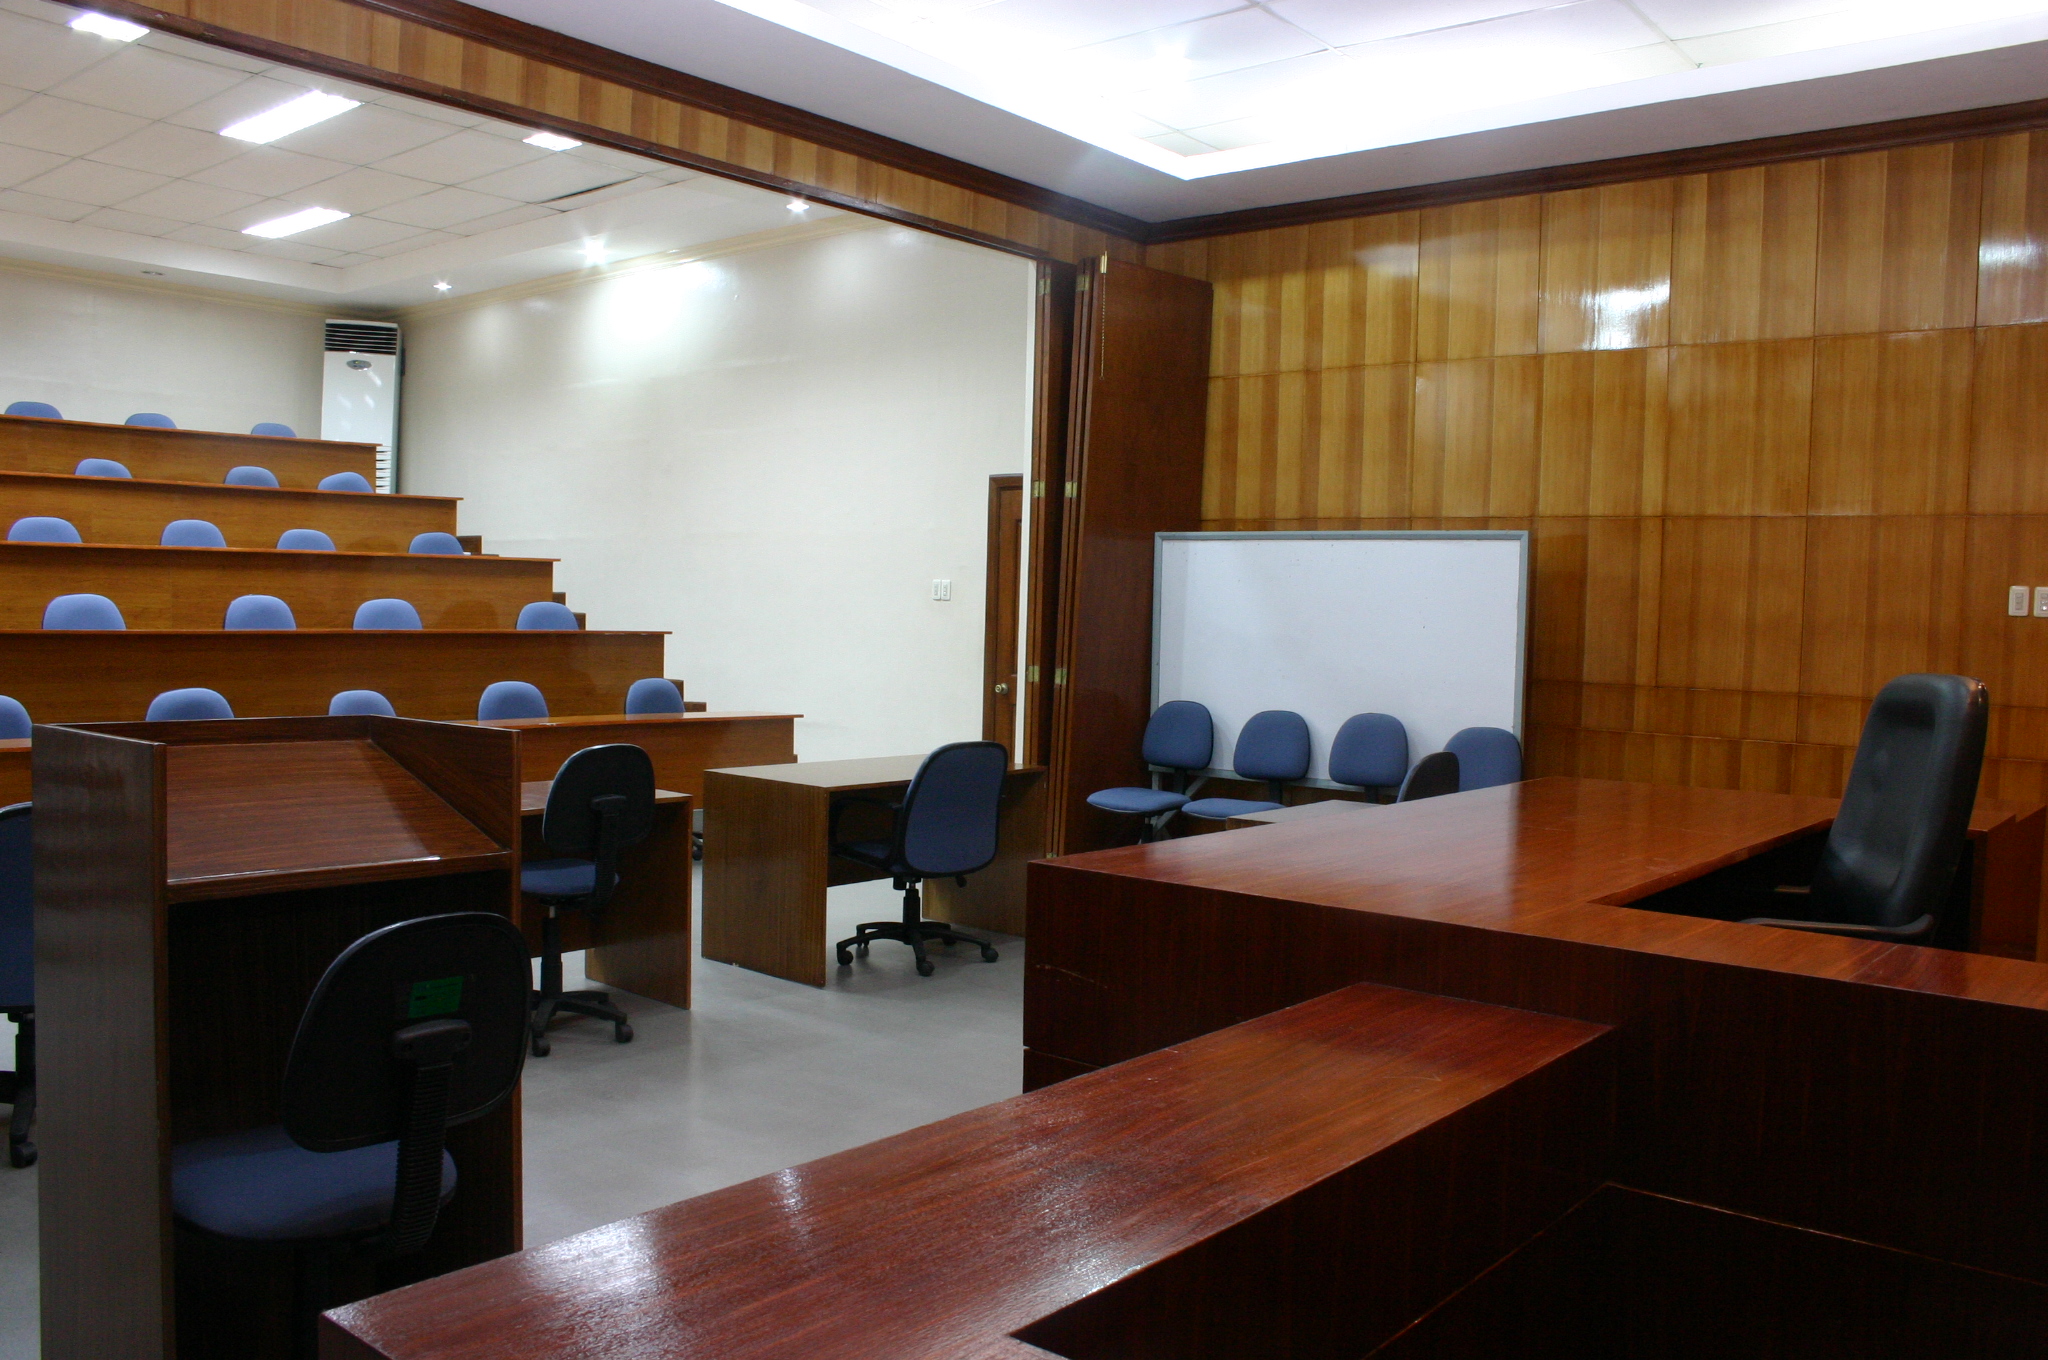 School of Law – Moot Court